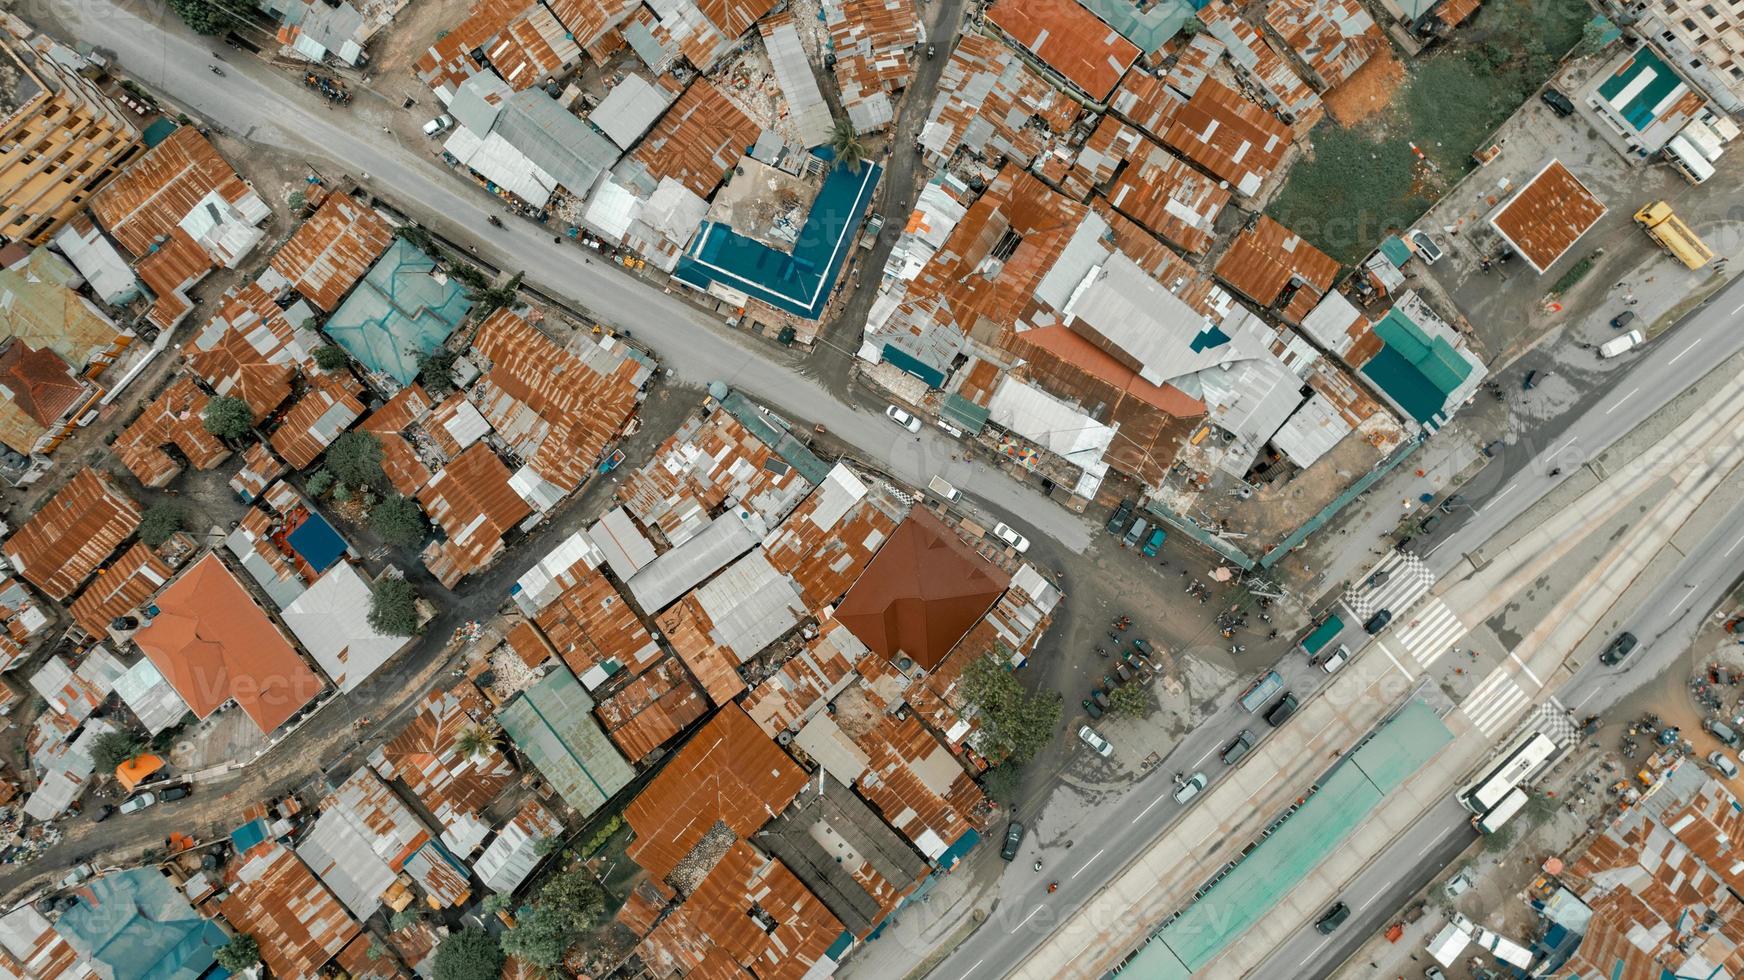 luchtfoto van het industriegebied in dar es salaam foto